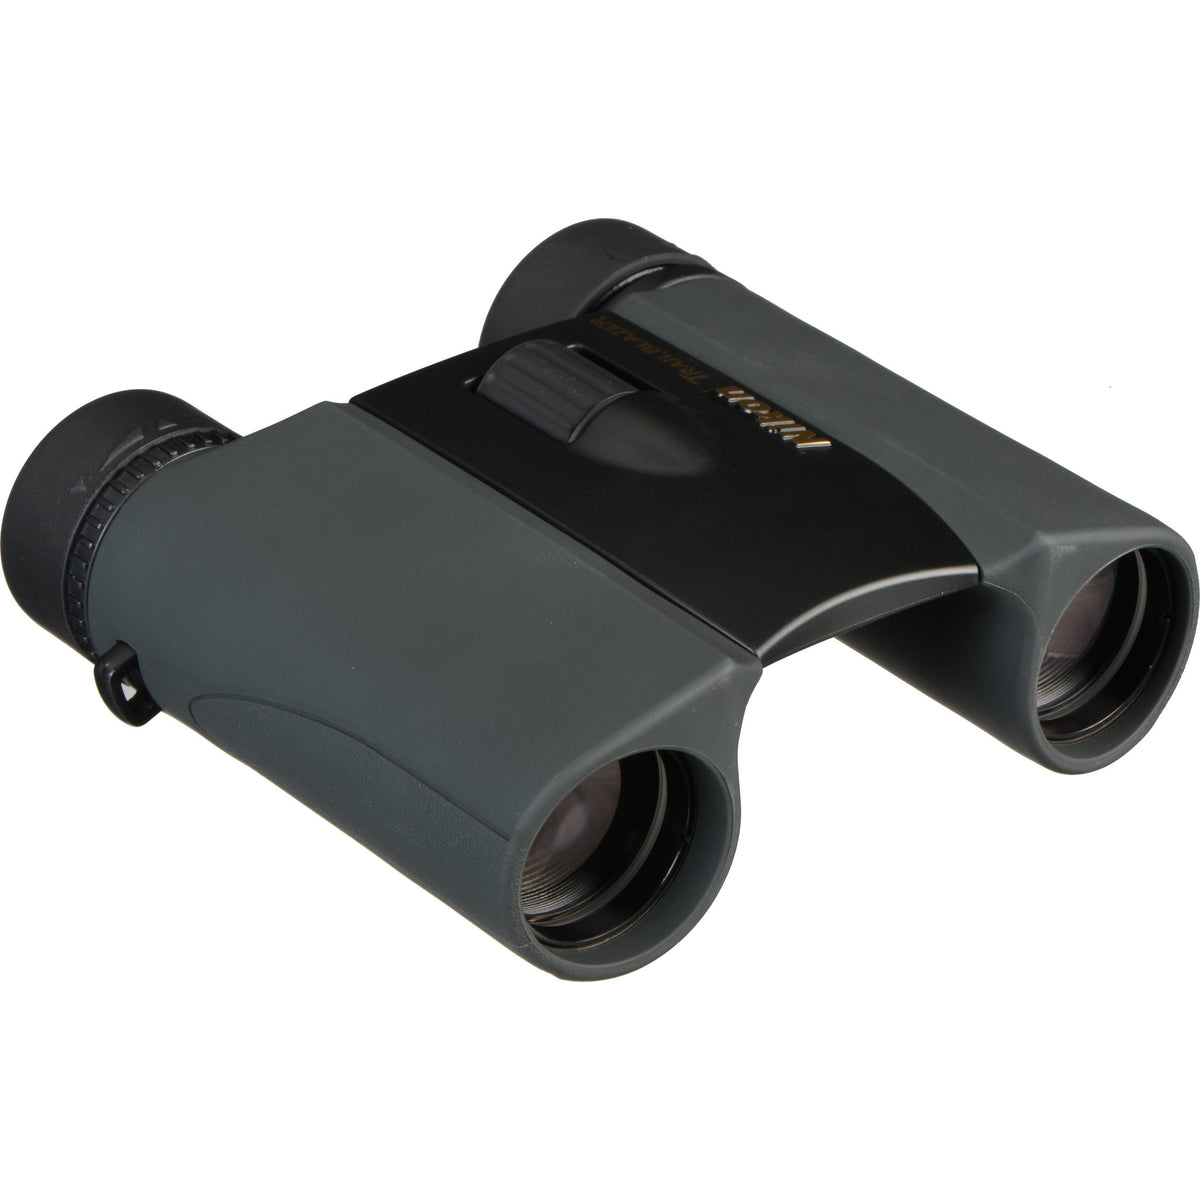 Nikon Trailblazer ATB Binocular